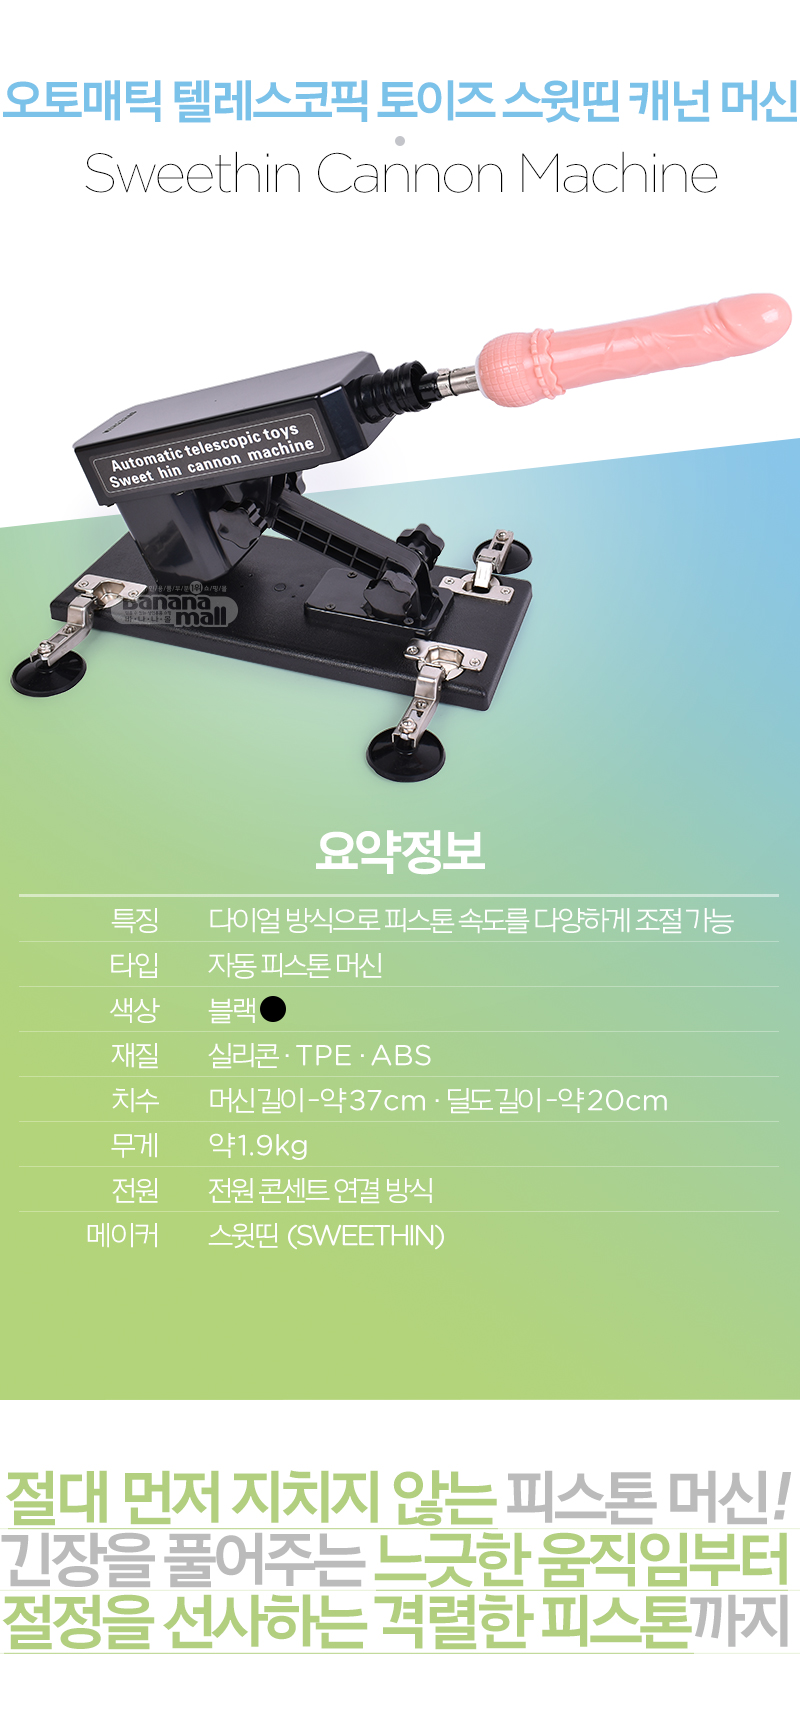 [딜도 교체 머신] 오토매틱 텔레스코픽 토이즈 스윗띤 캐넌 머신(Automatic Telescopic toys Sweethin Cannon Machine) - 스윗띤(A02)